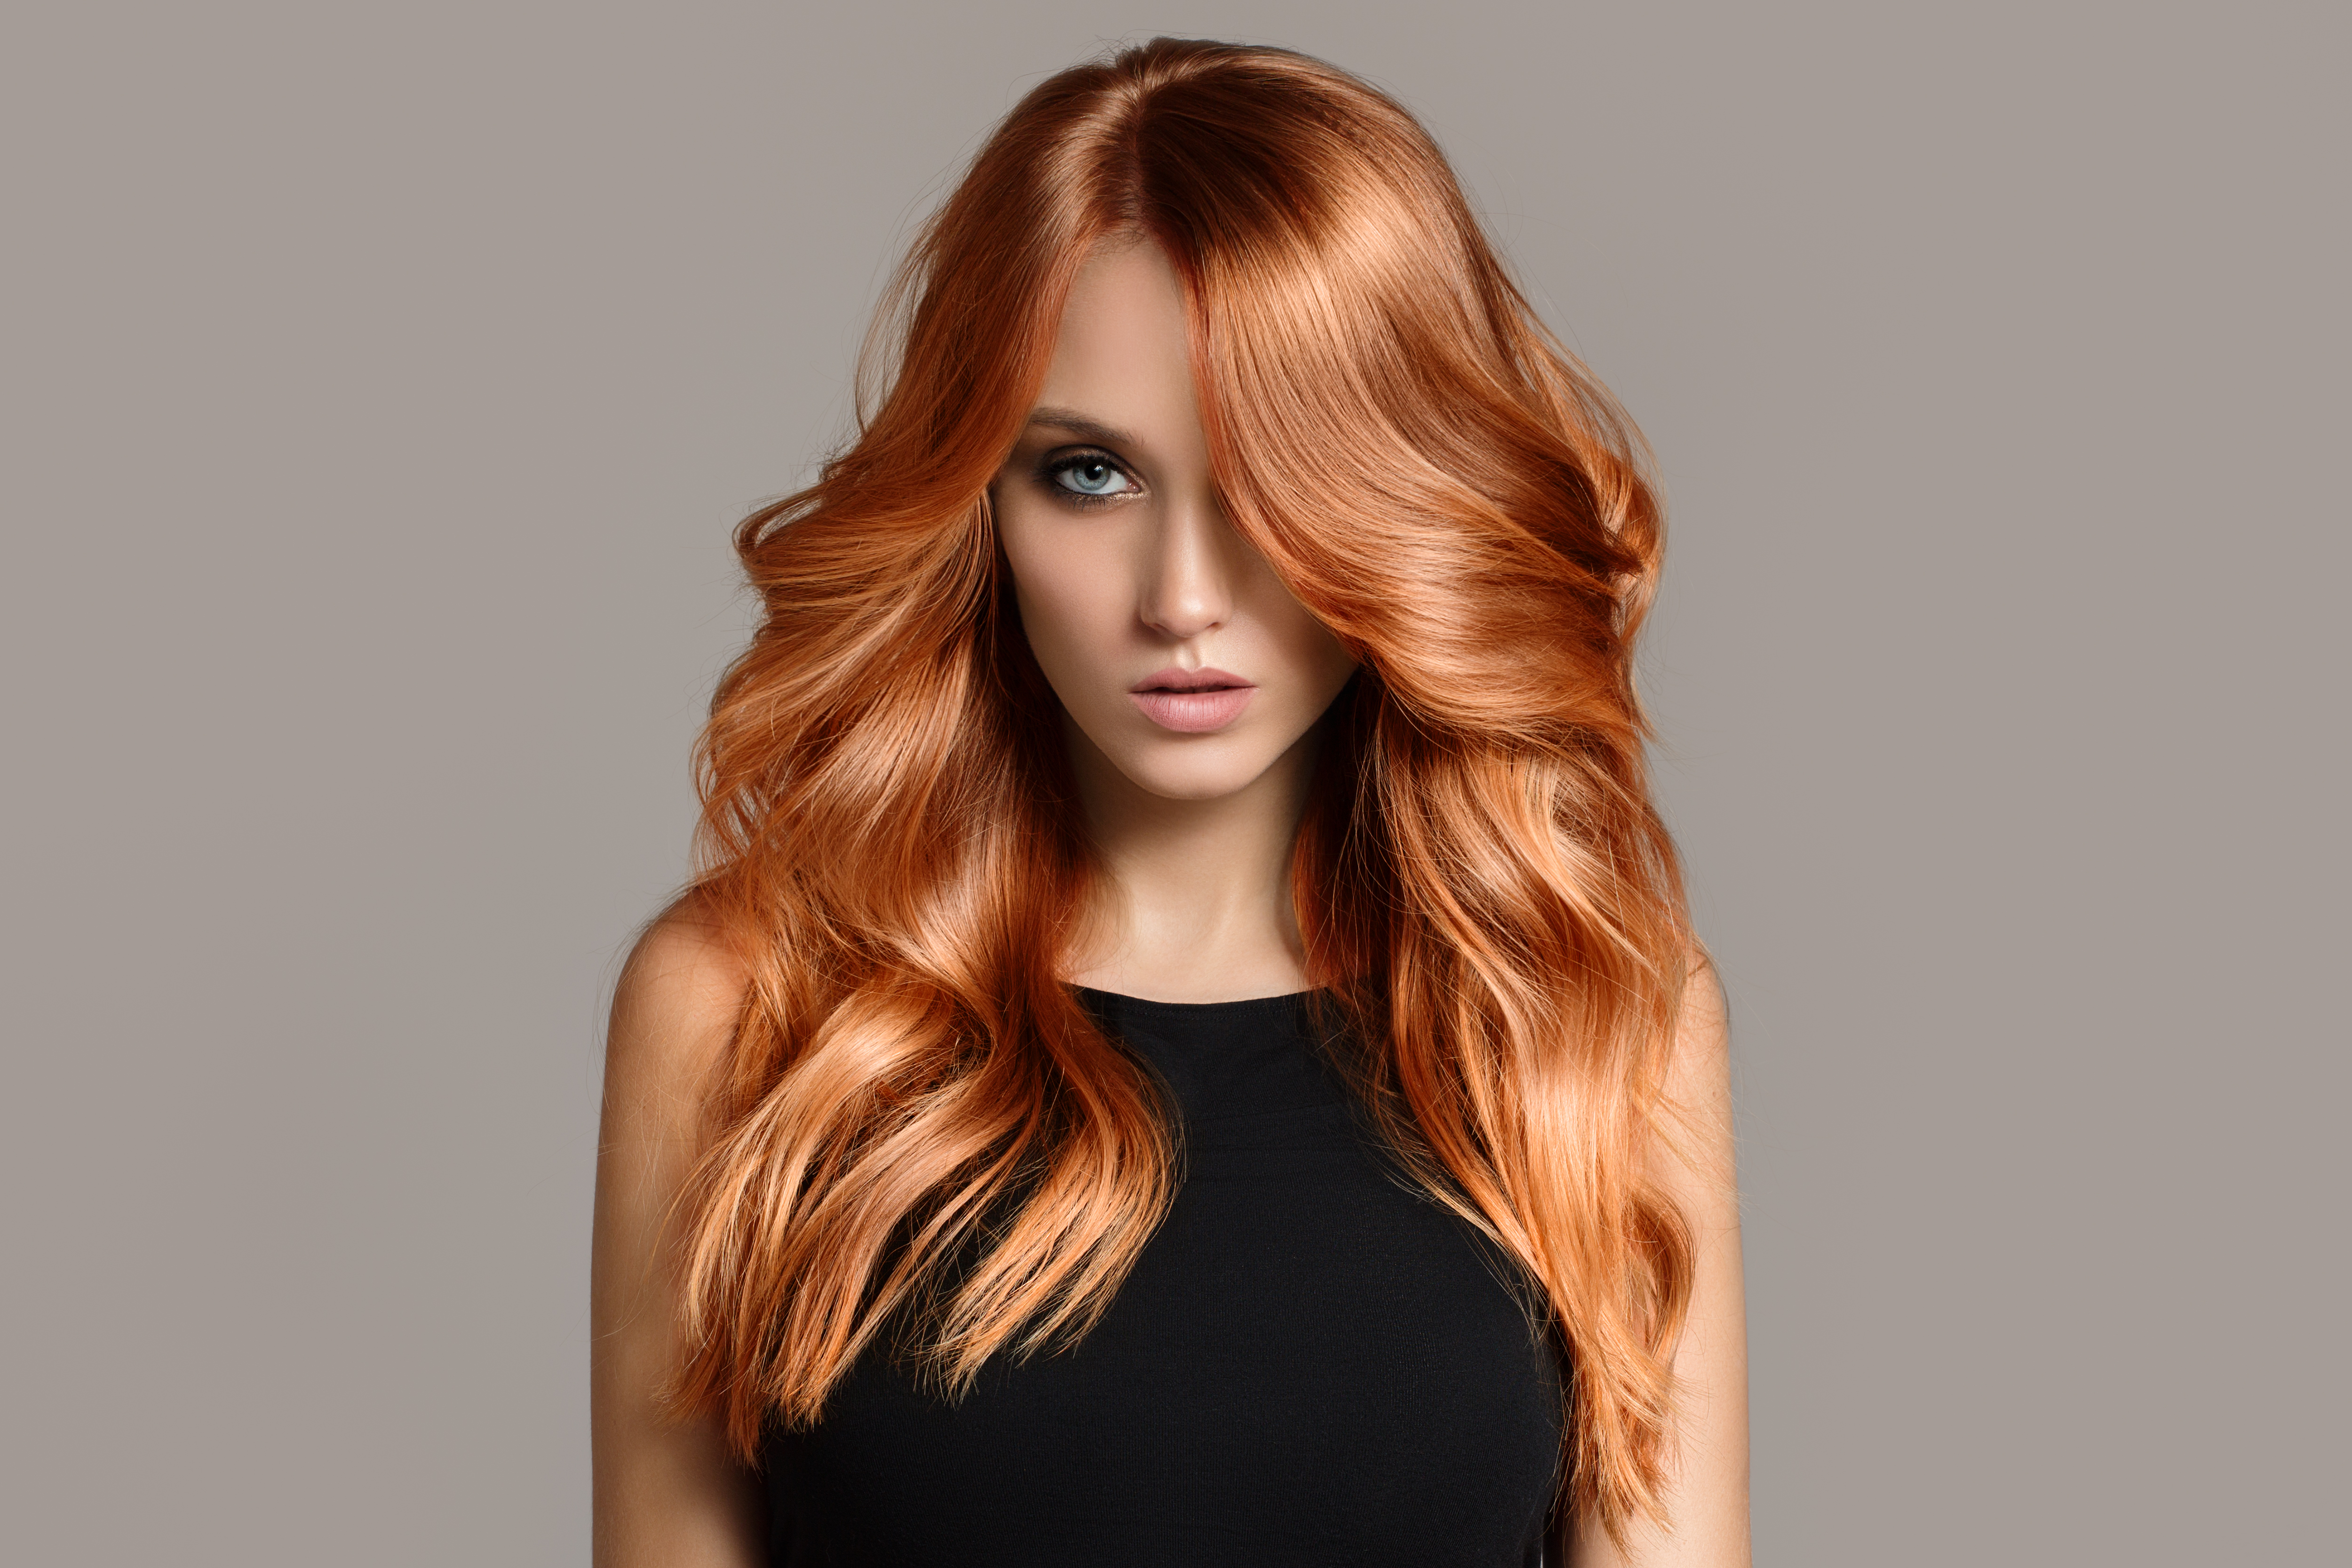 Une femme aux cheveux roux bouclés | Source : Shutterstock